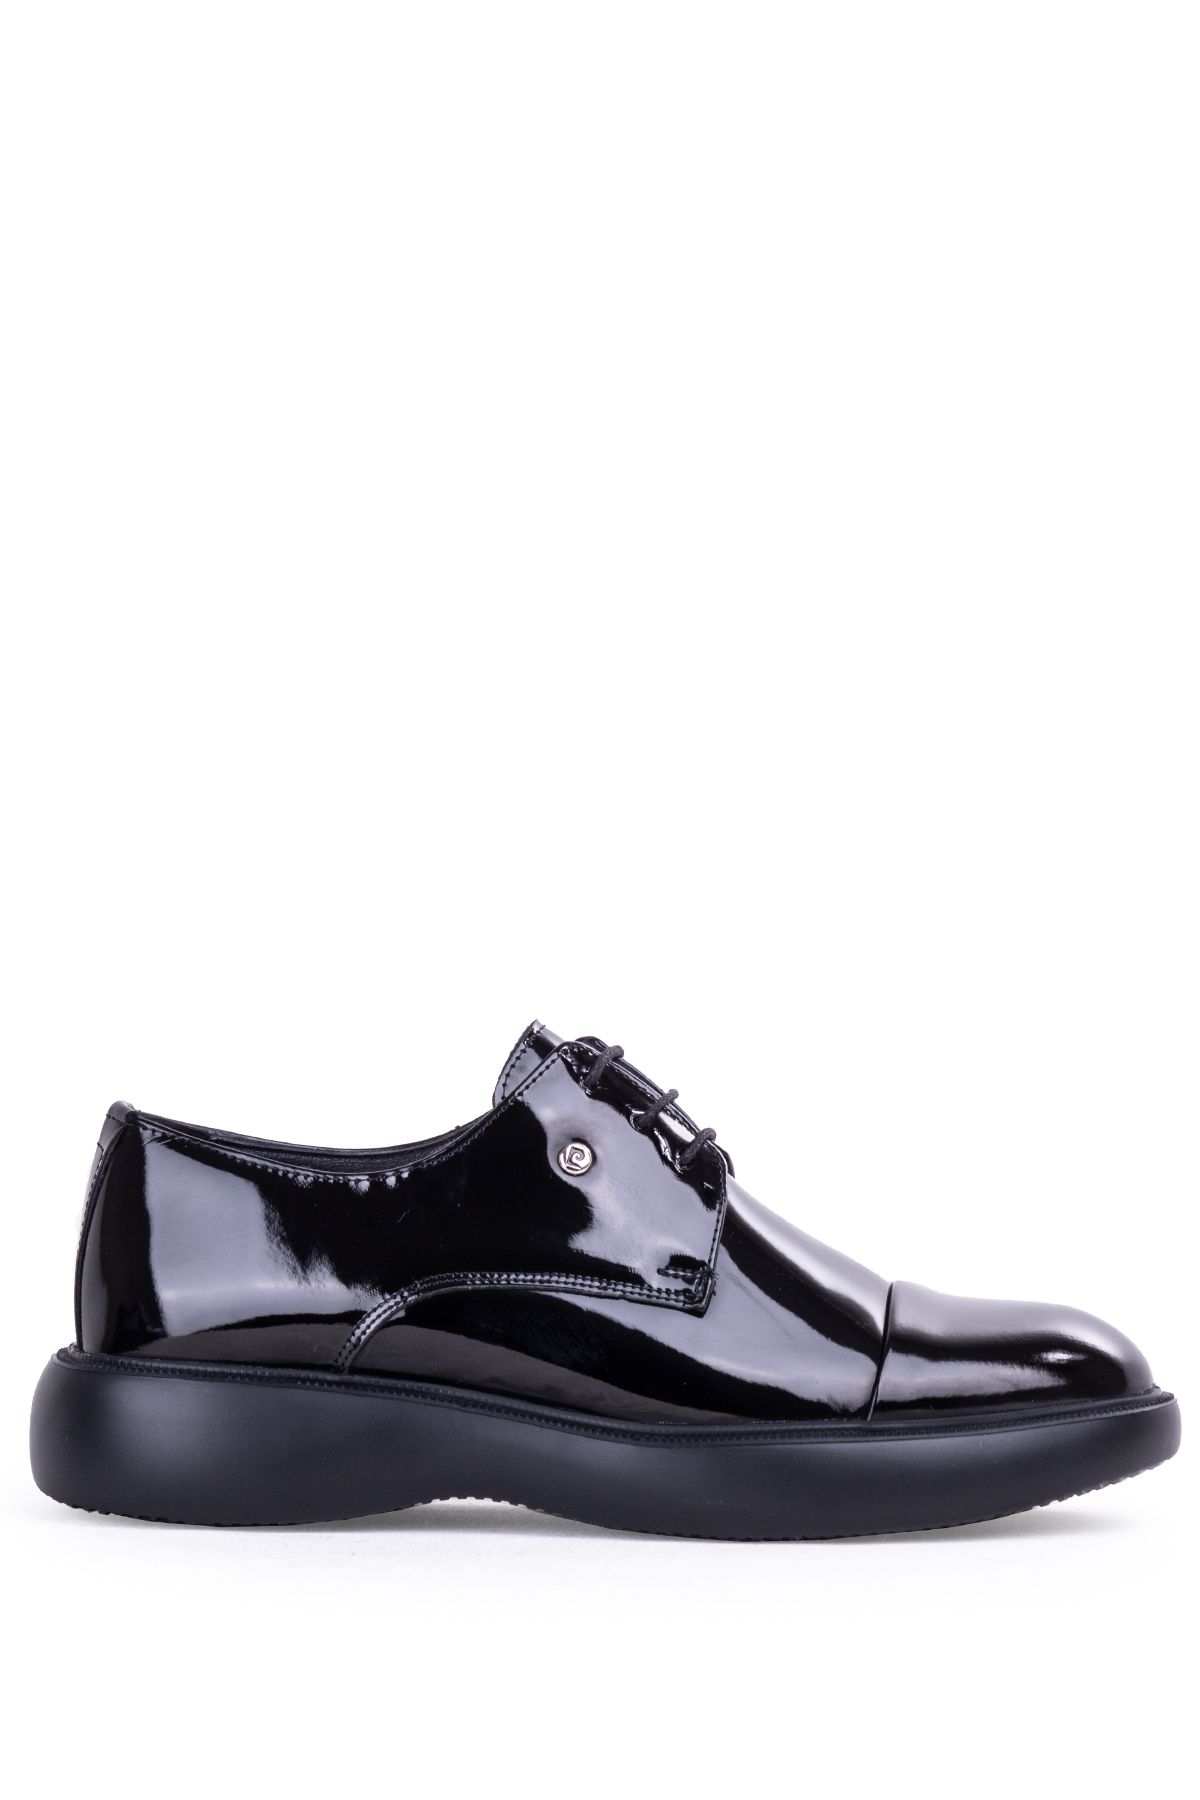 Pierre Cardin Erkek Damat Ayakkabısı Bohça Ayakkabısı Erkek Takım Elbise Ayakkabısı Klasik Erkek Aya